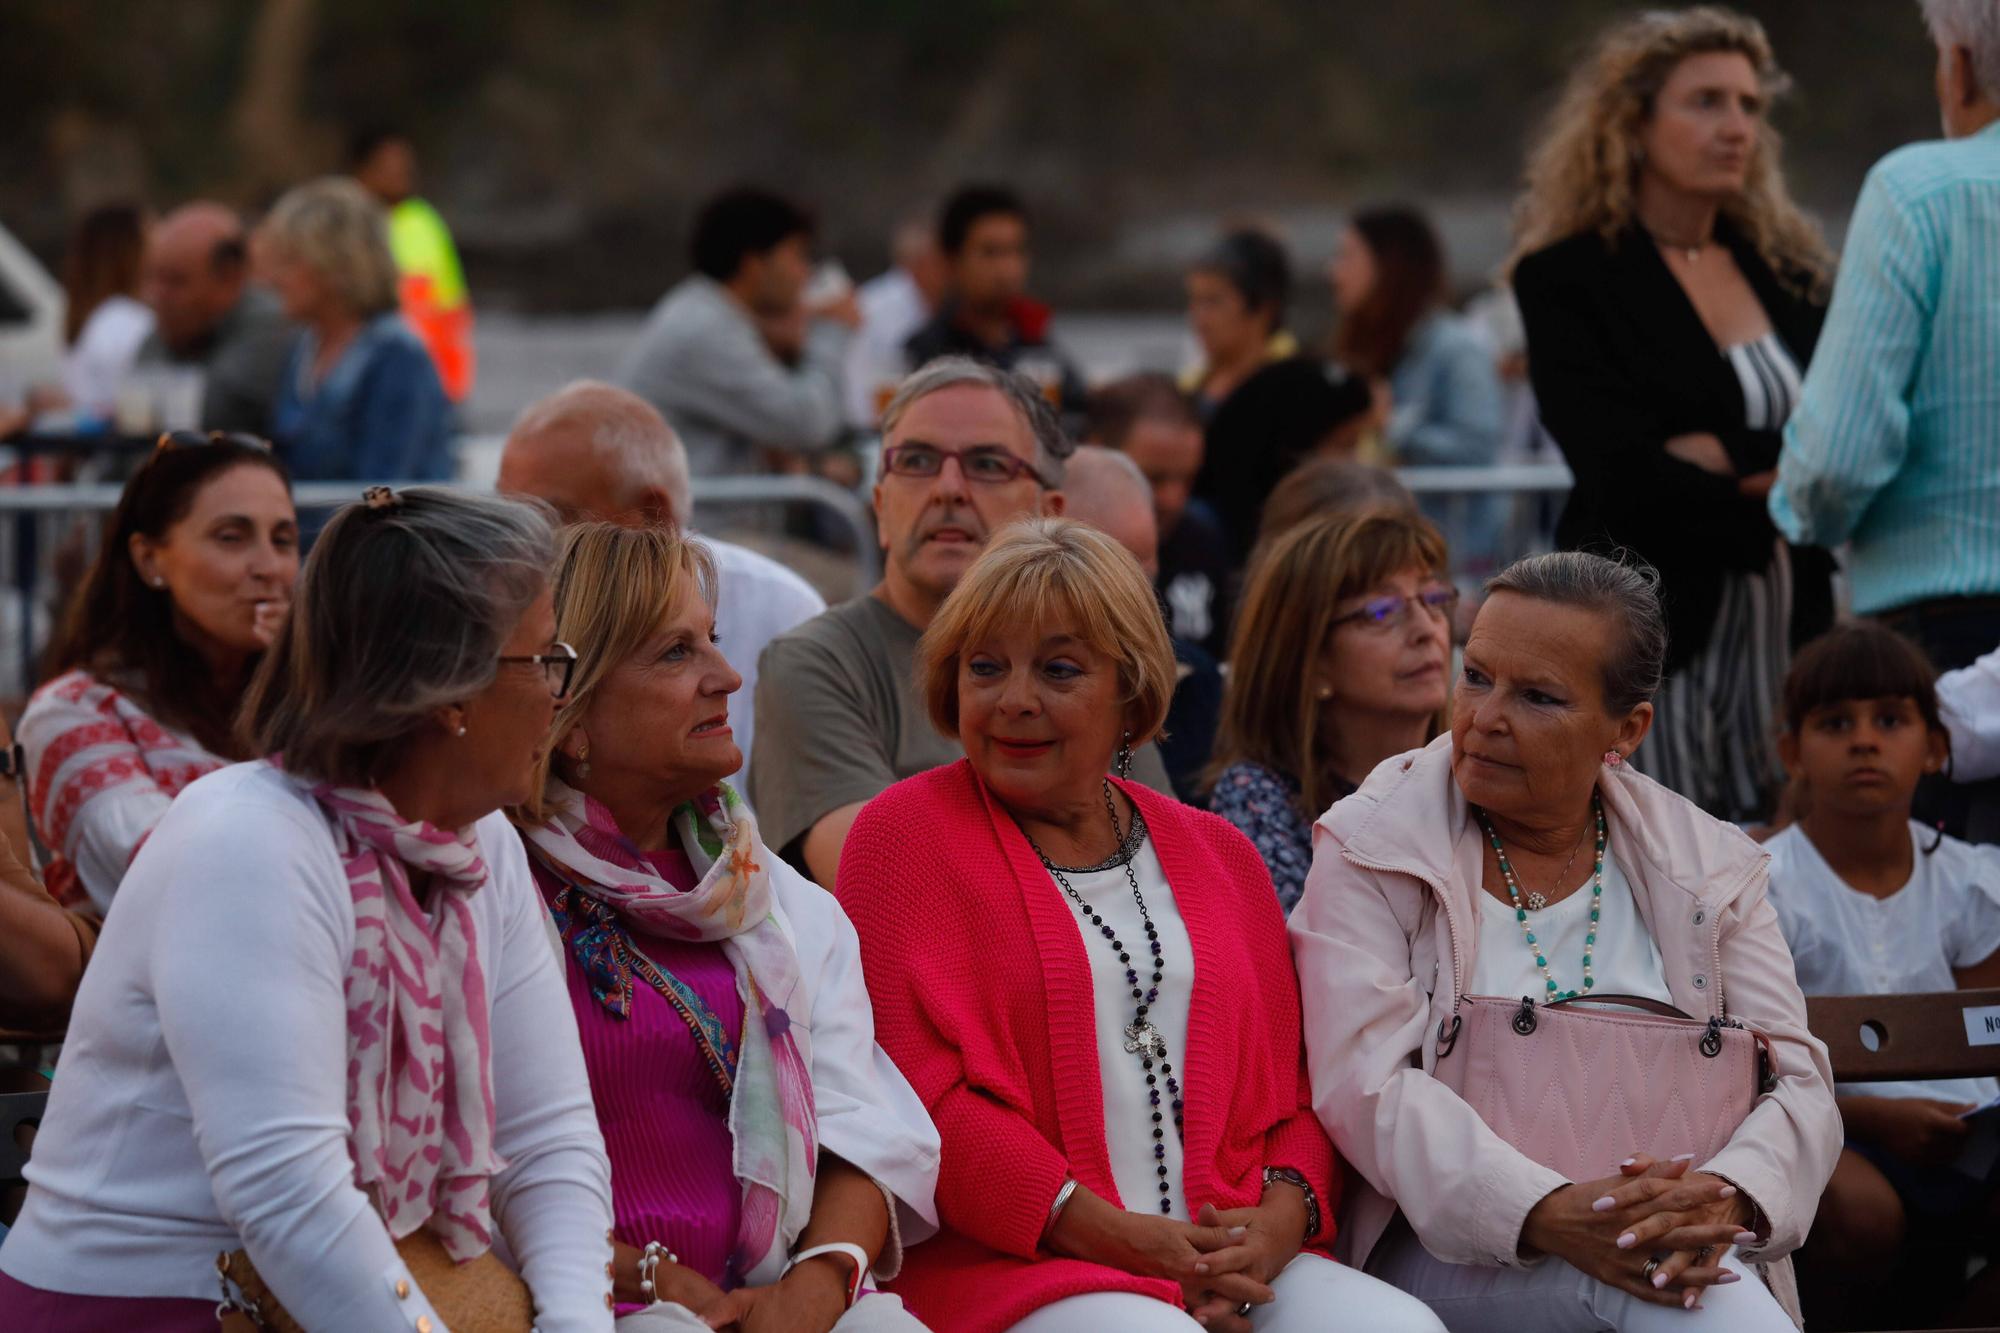 El concierto de Café Quijano en "Luanco al mar", en imágenes